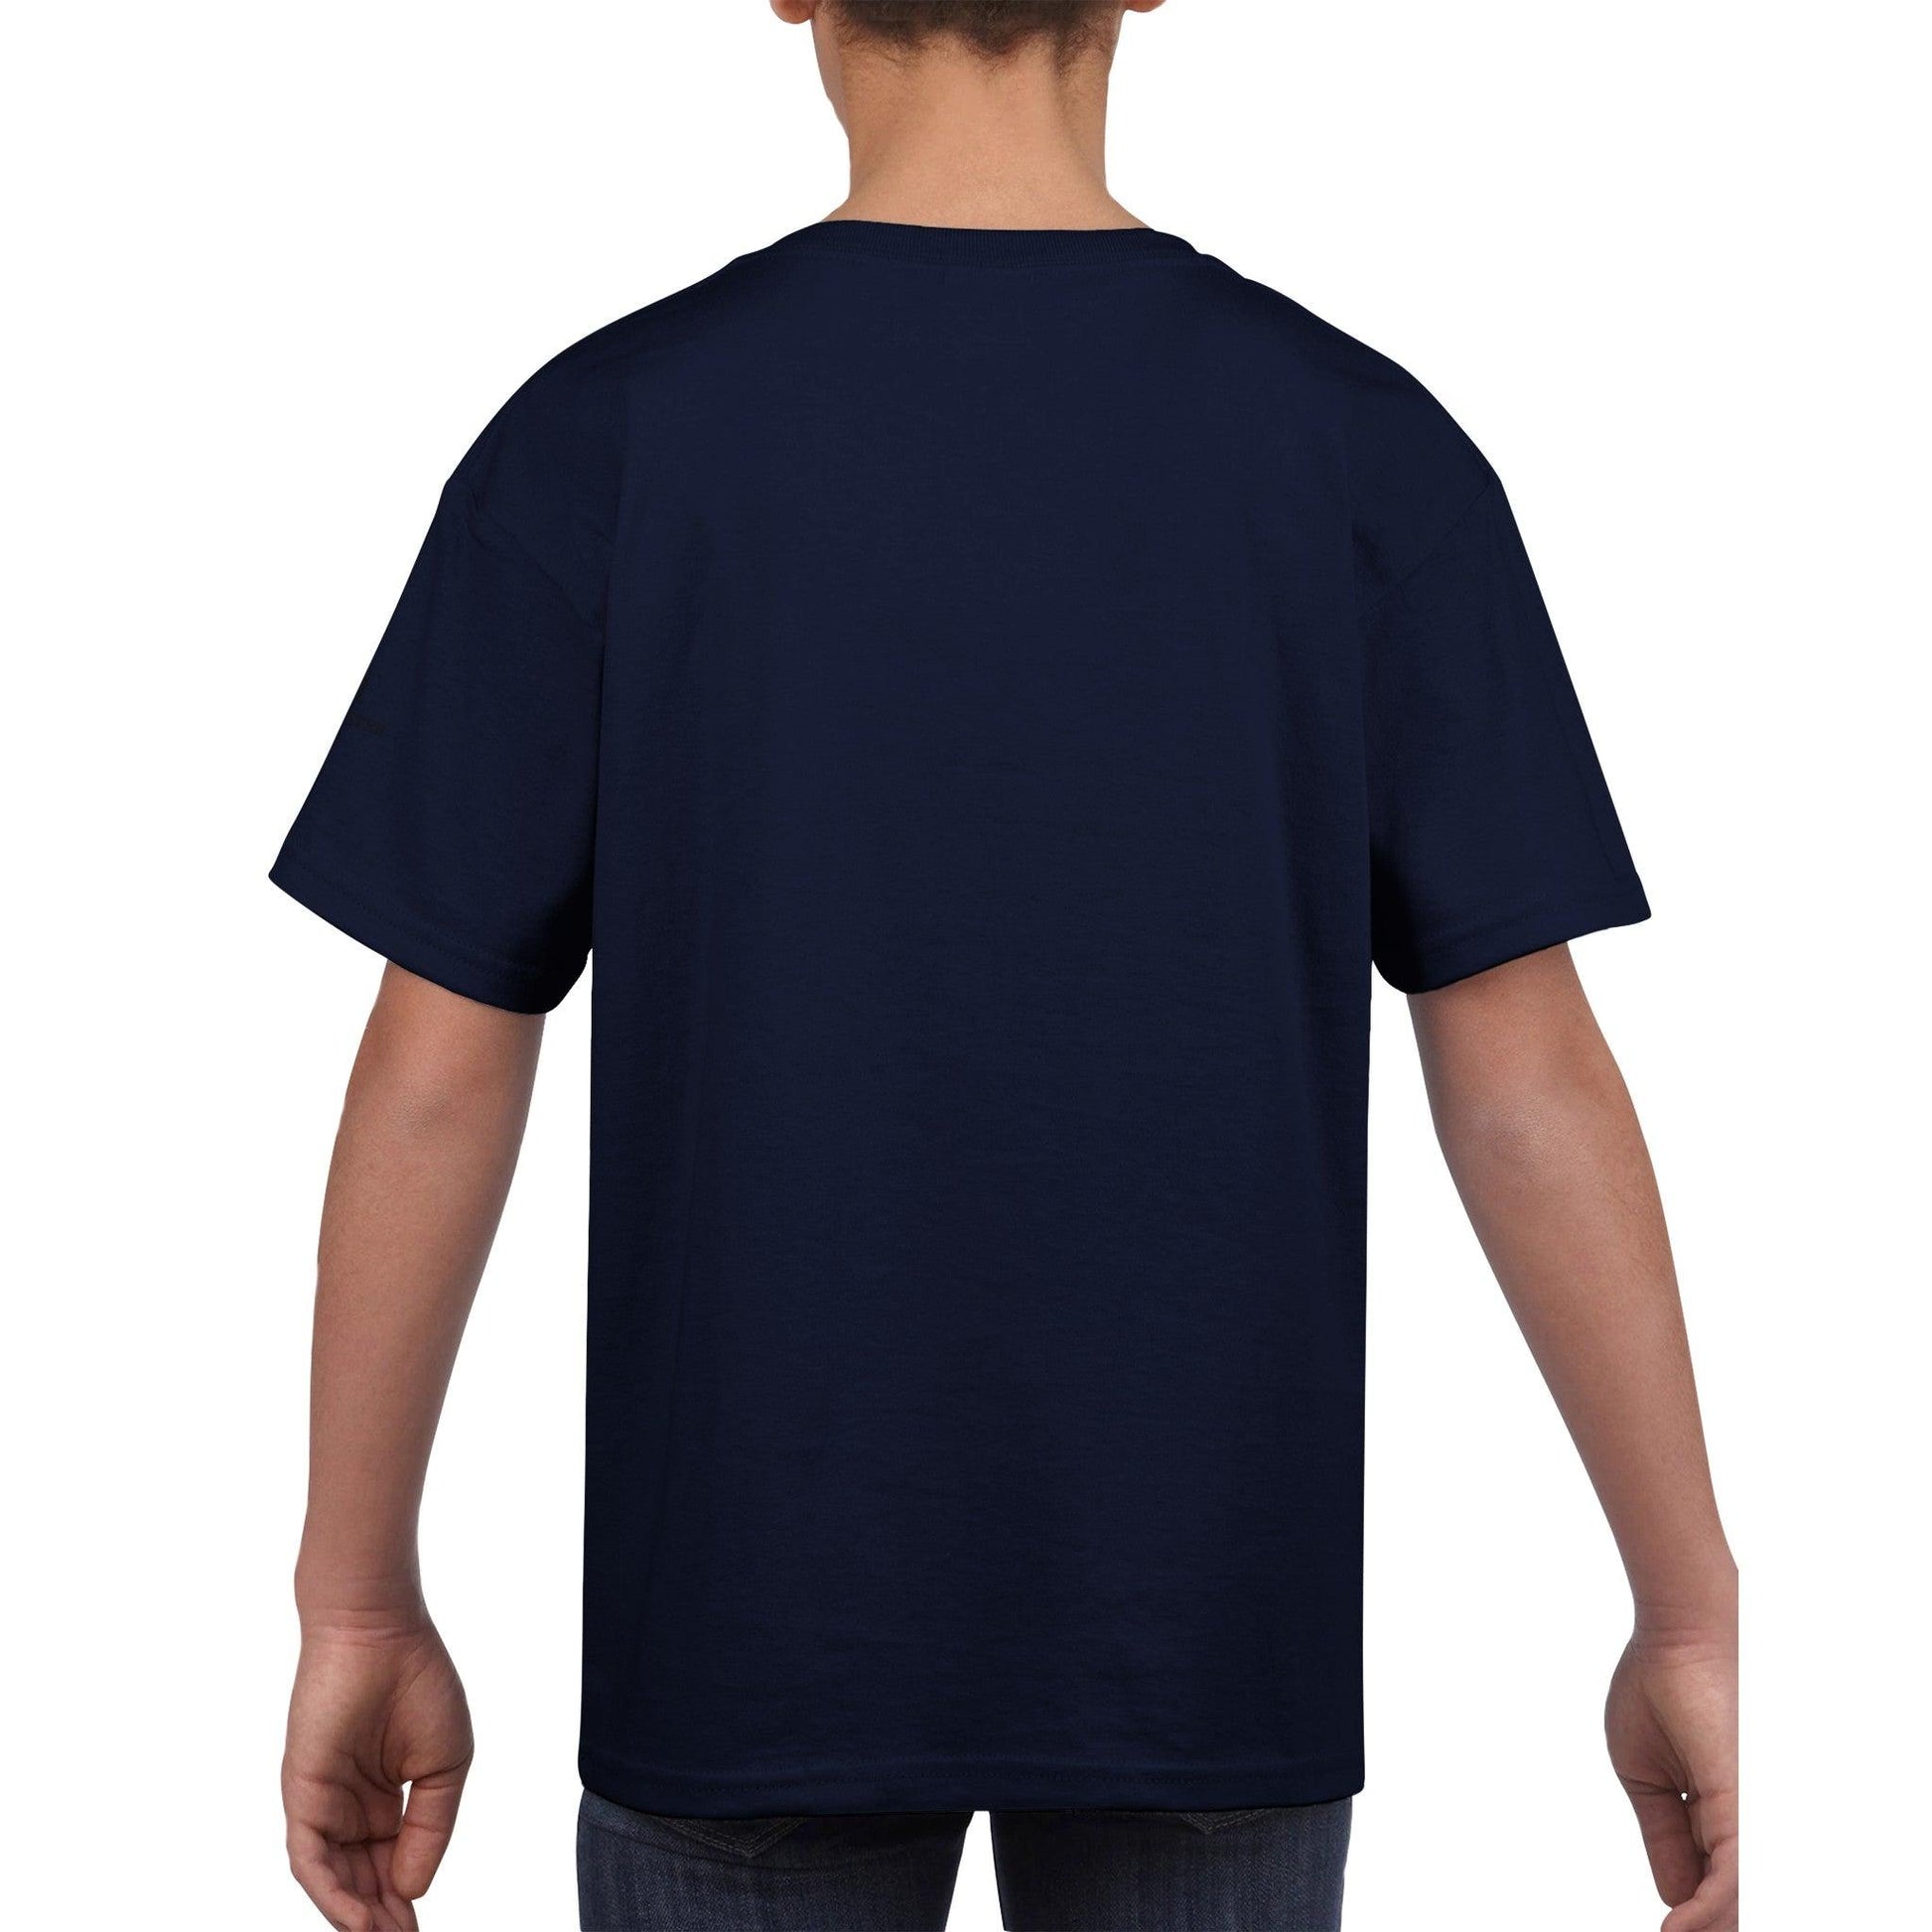 Classic Kids Crewneck T-shirt featuring Rhodesian Ridgeback Paper Quill Design - Hobbster